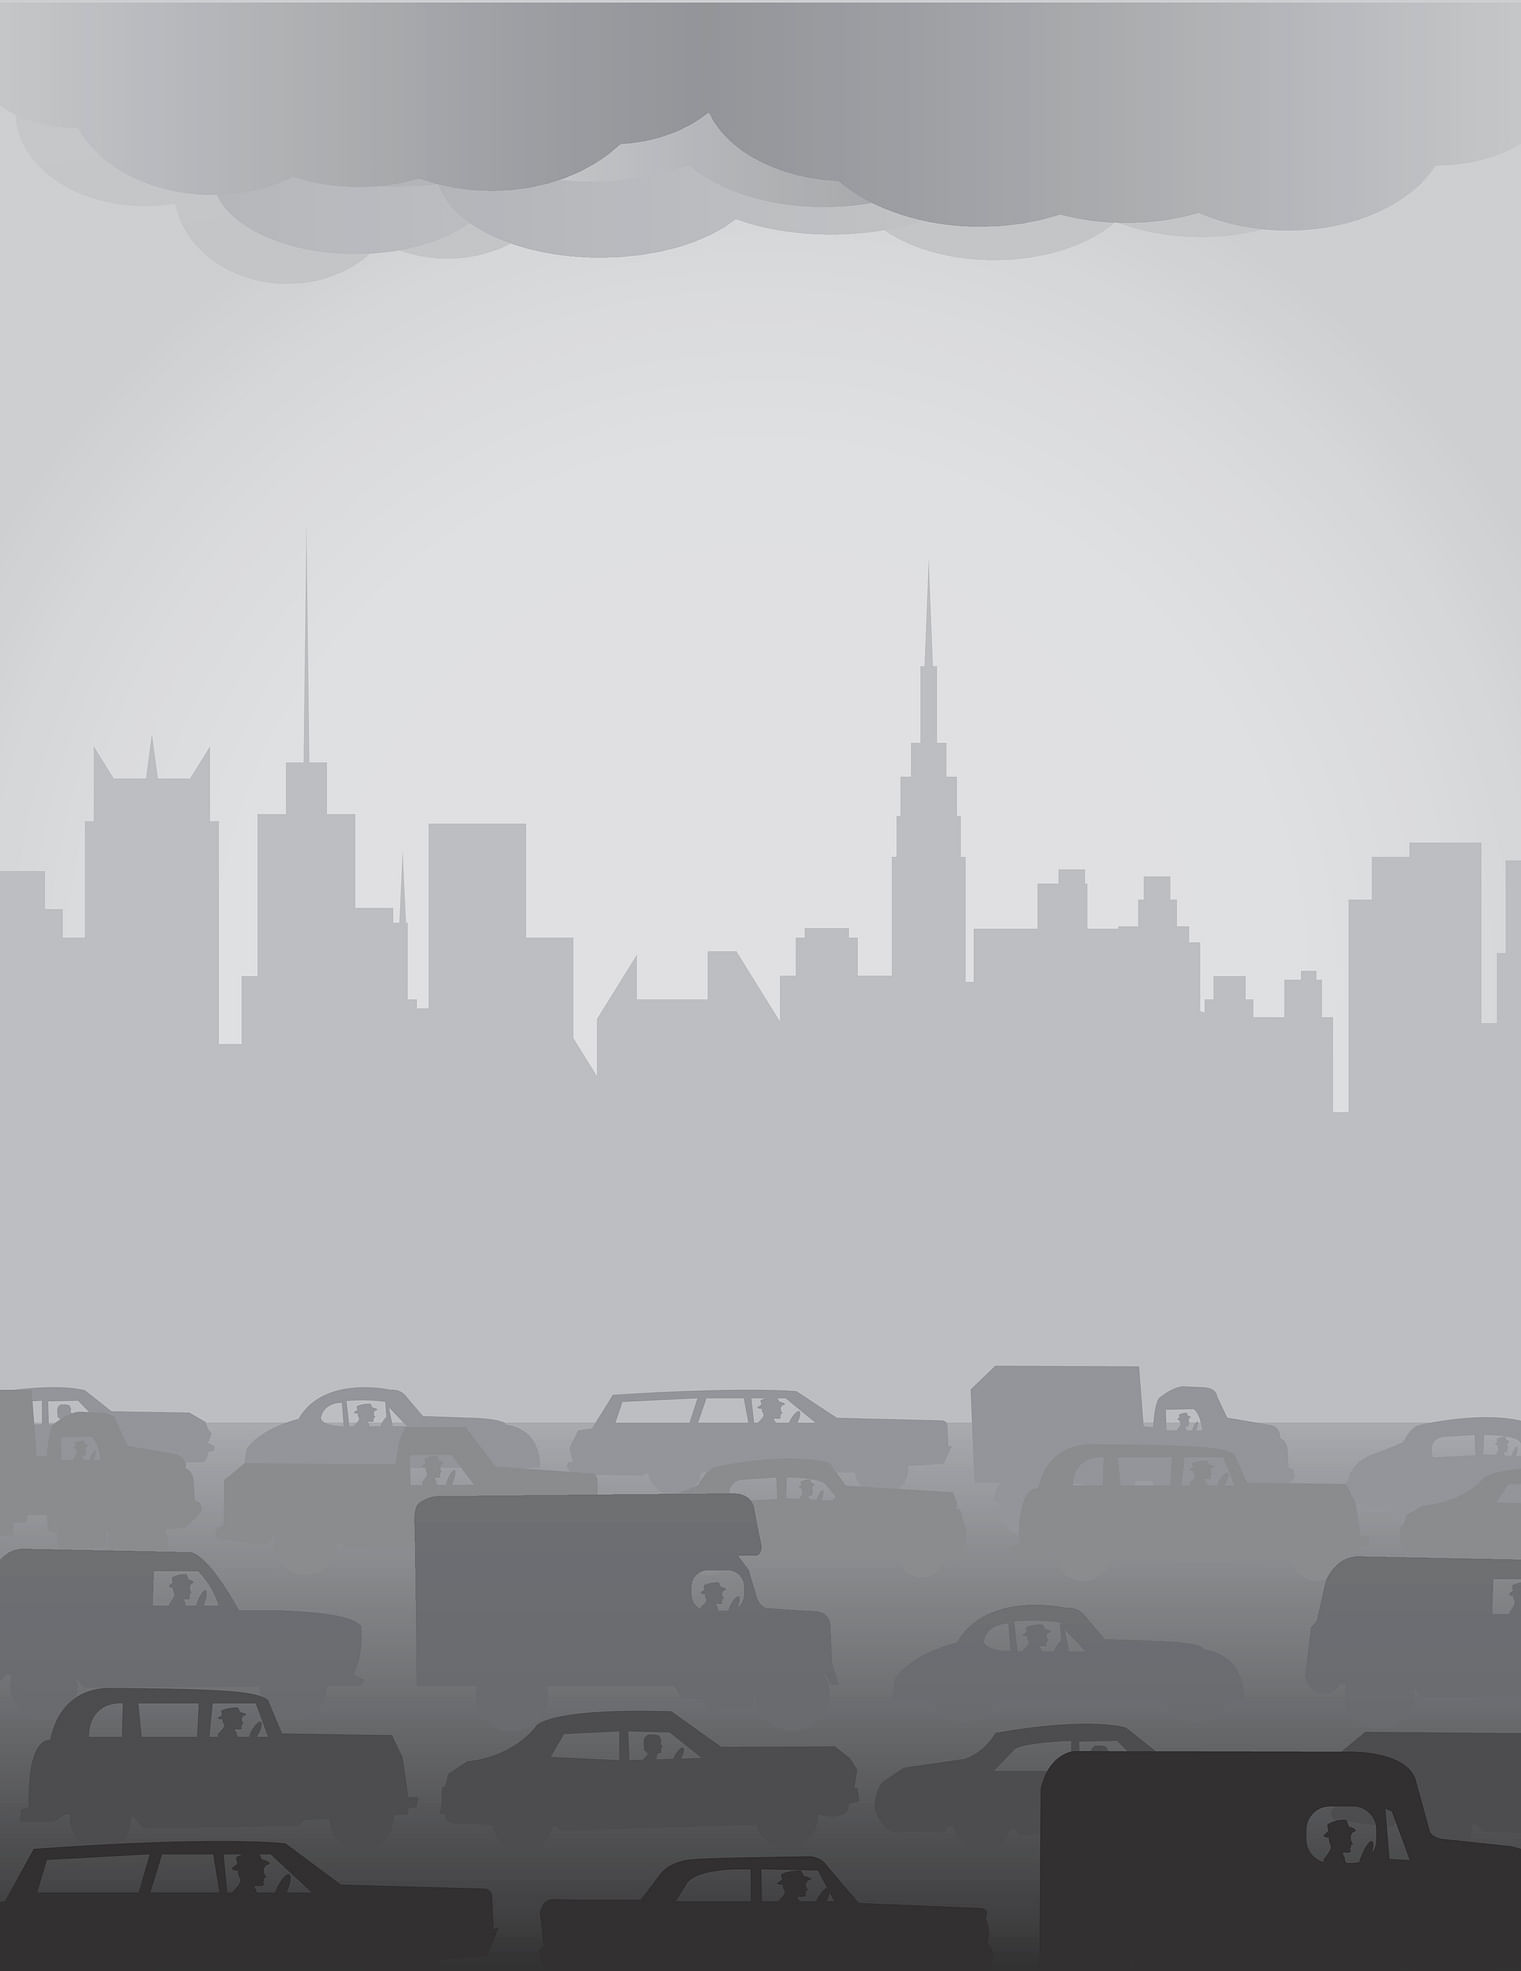 Pollution illustration. (Photo: iStock)